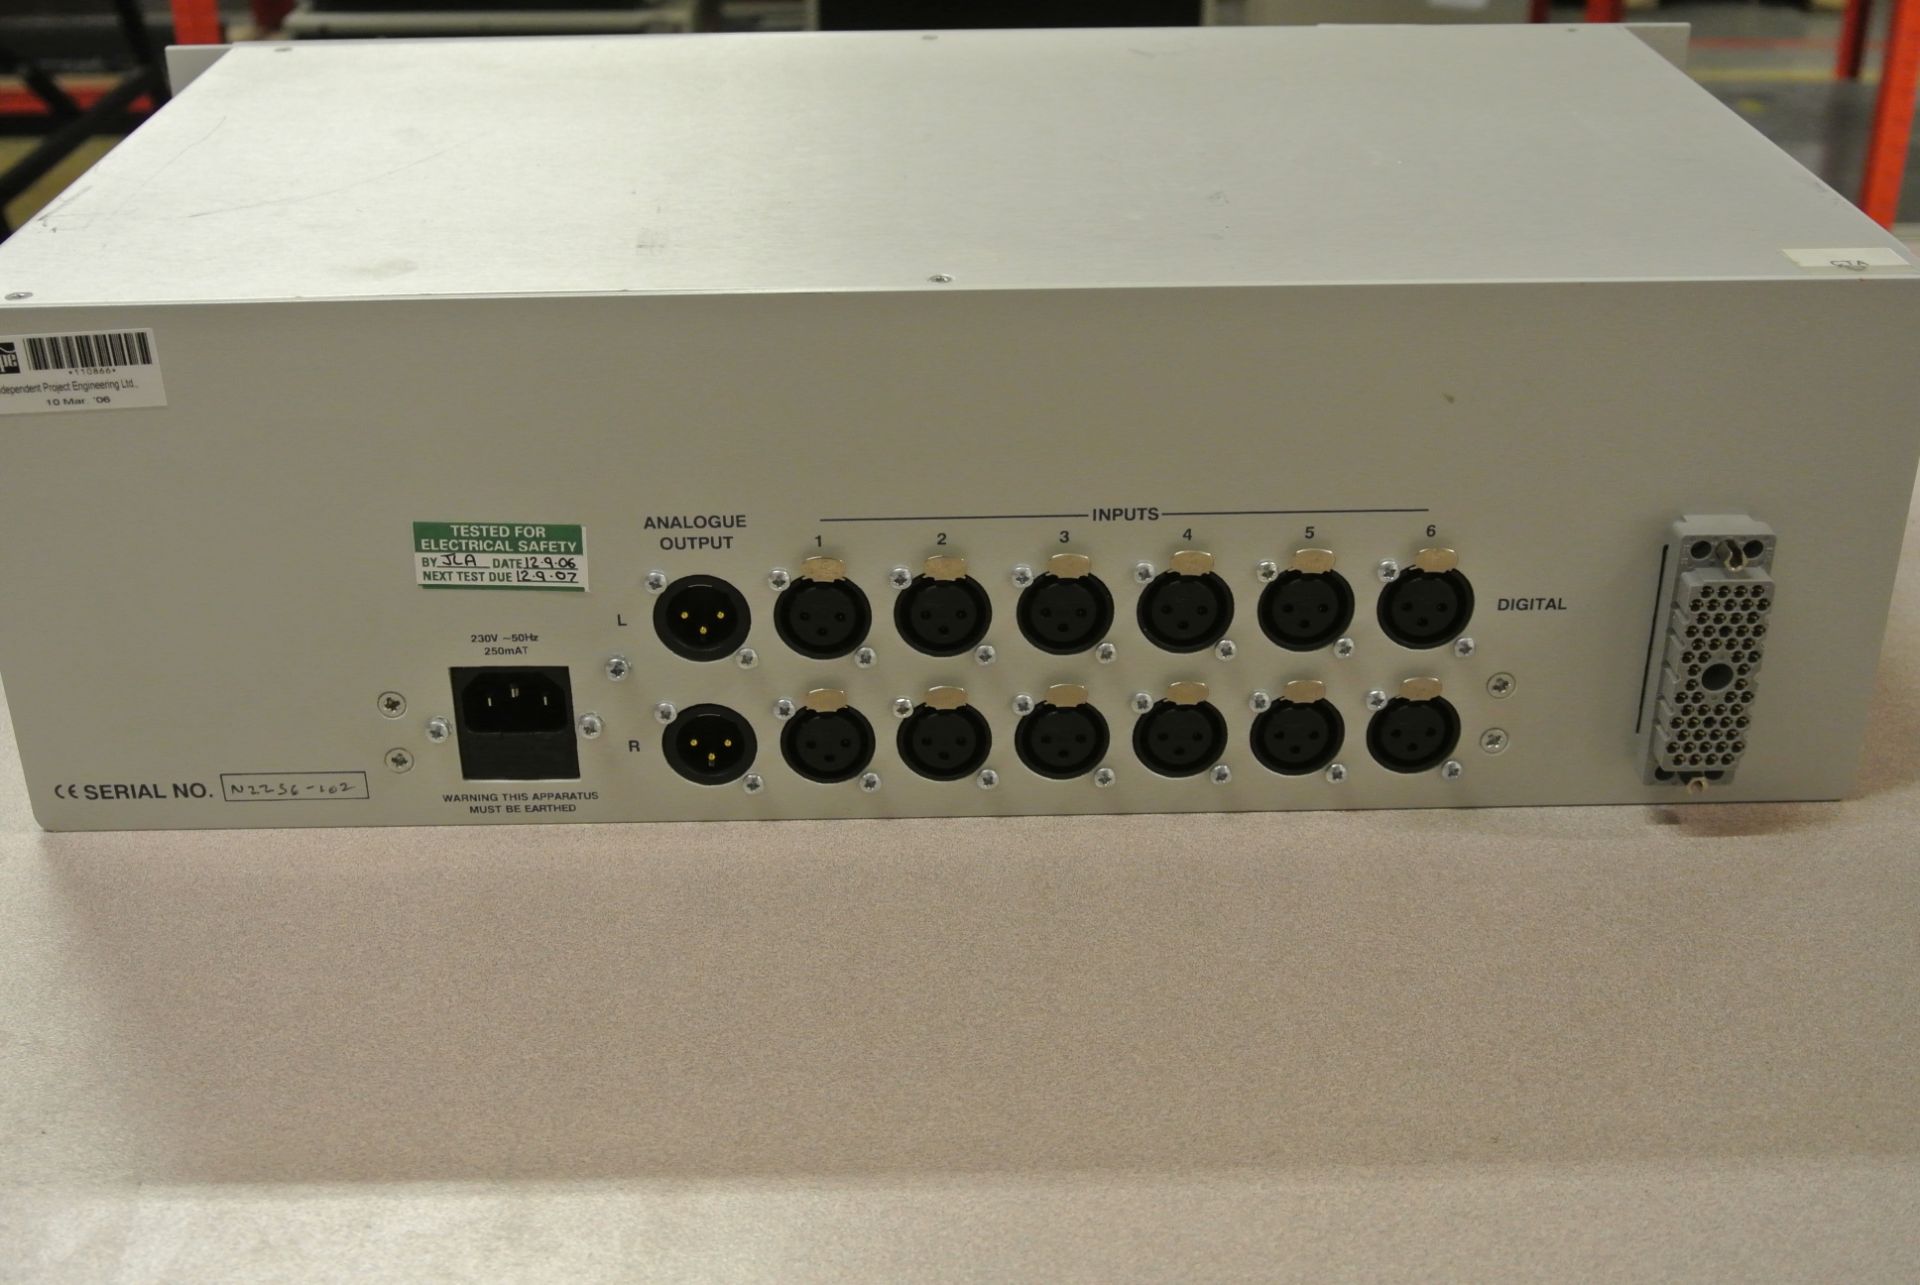 AUDIONICS SC1-D Digital Audio Monitoring Unit - 2U 19' Rack Mount - Image 4 of 6